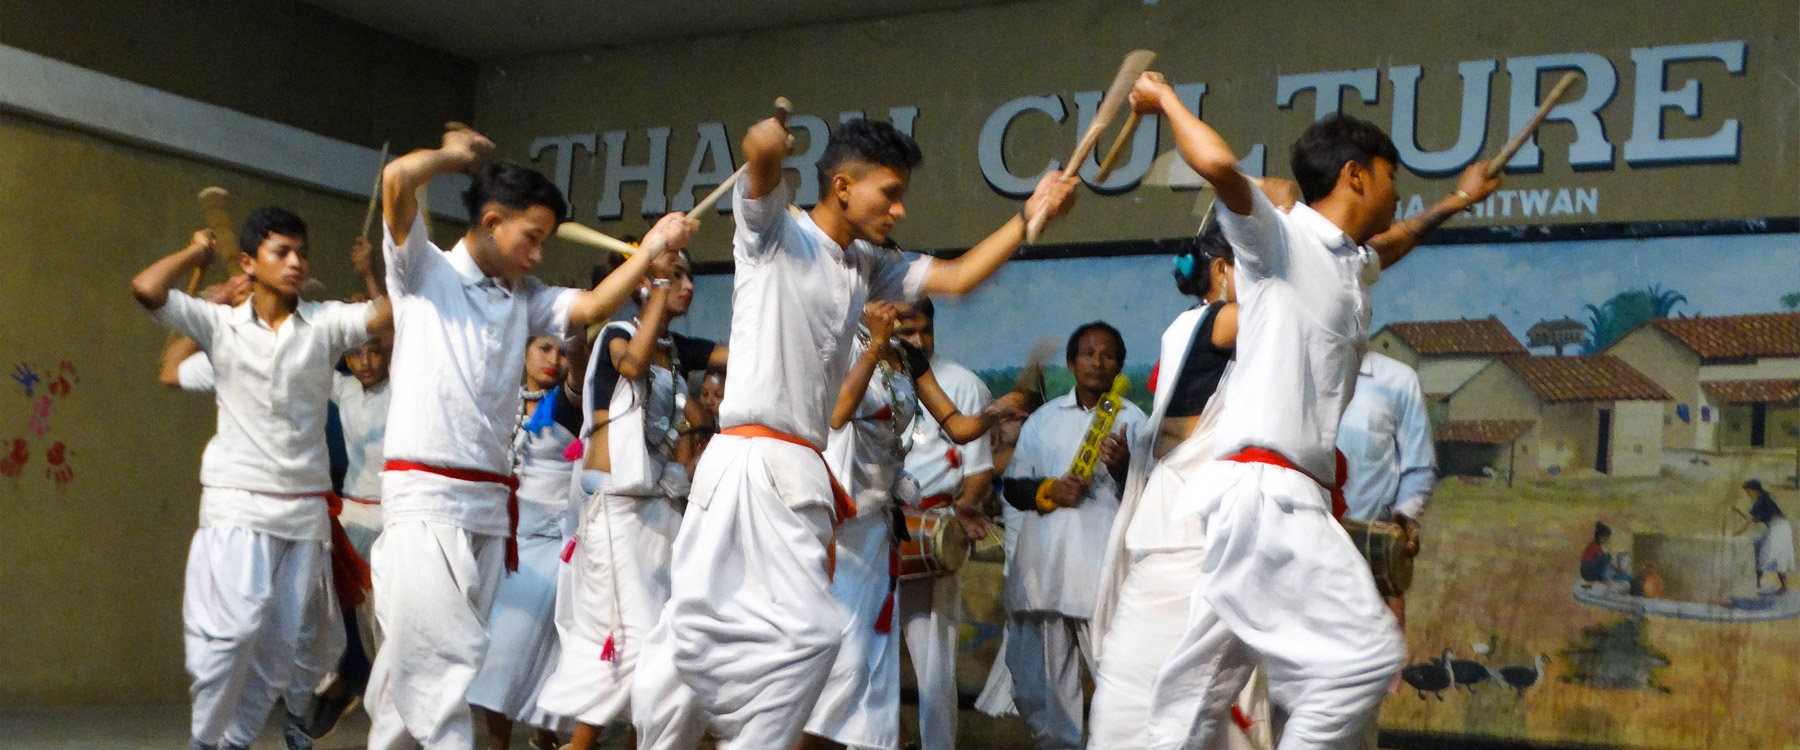 tharu-cultural-dance-at-chitwan.jpg